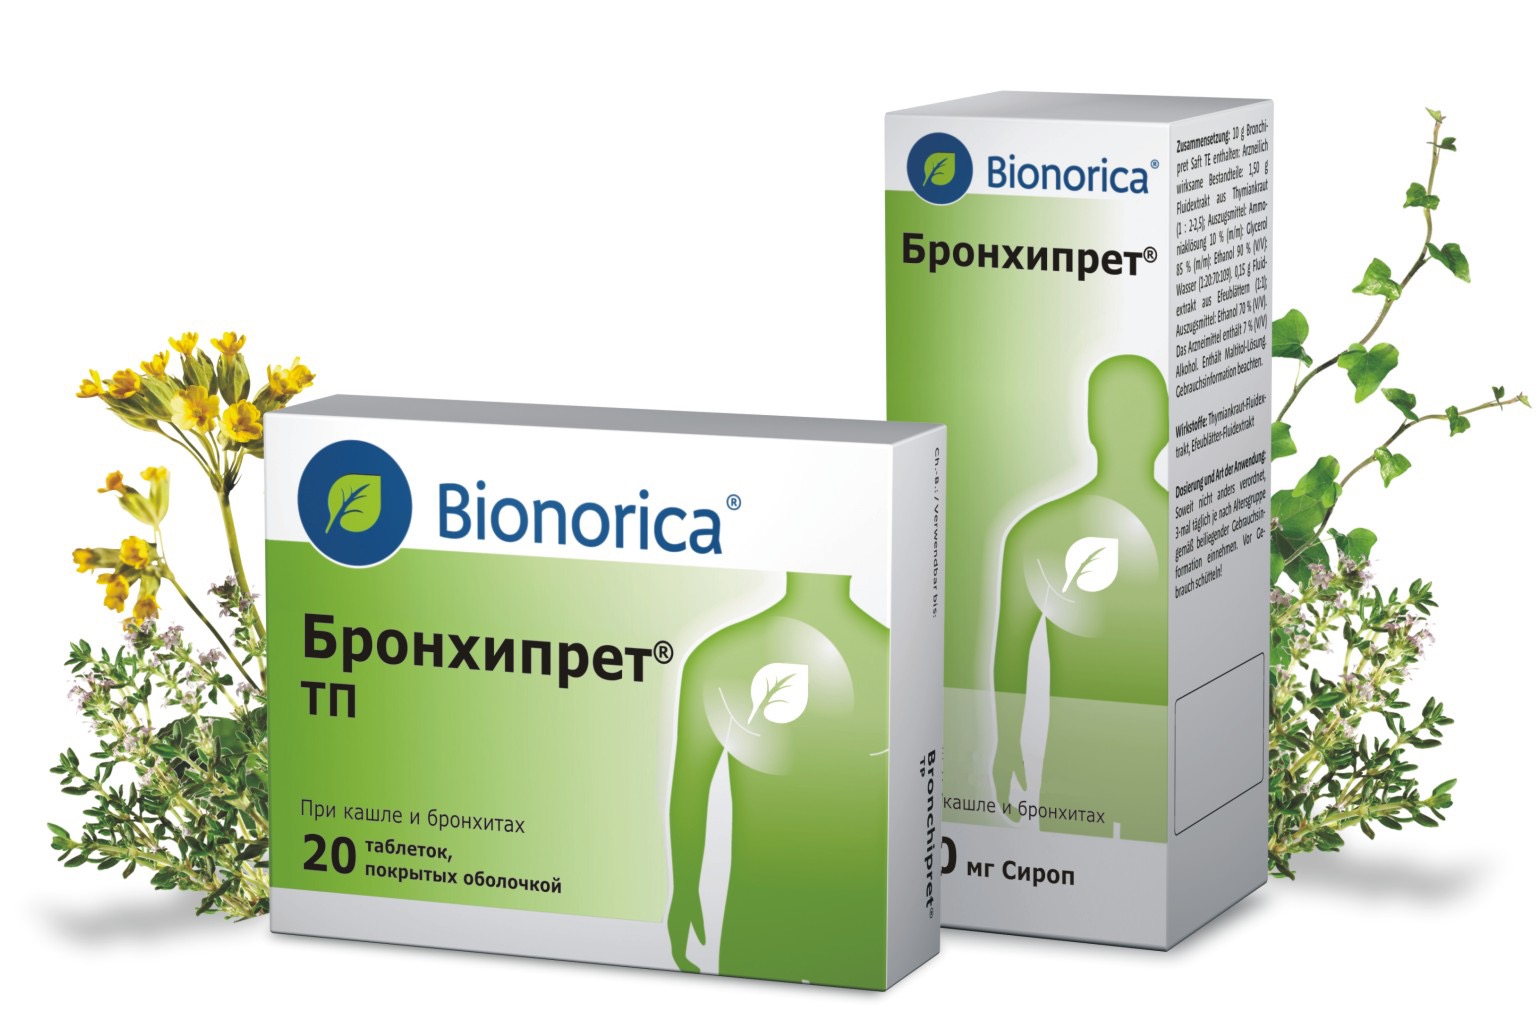 Эффективное лекарство от кашля и бронхита. Бионорика от кашля. Сиропы от кашля Bionorica Бронхипрет. Бионорика от кашля Бронхипрет. Bionorica Бронхипрет.